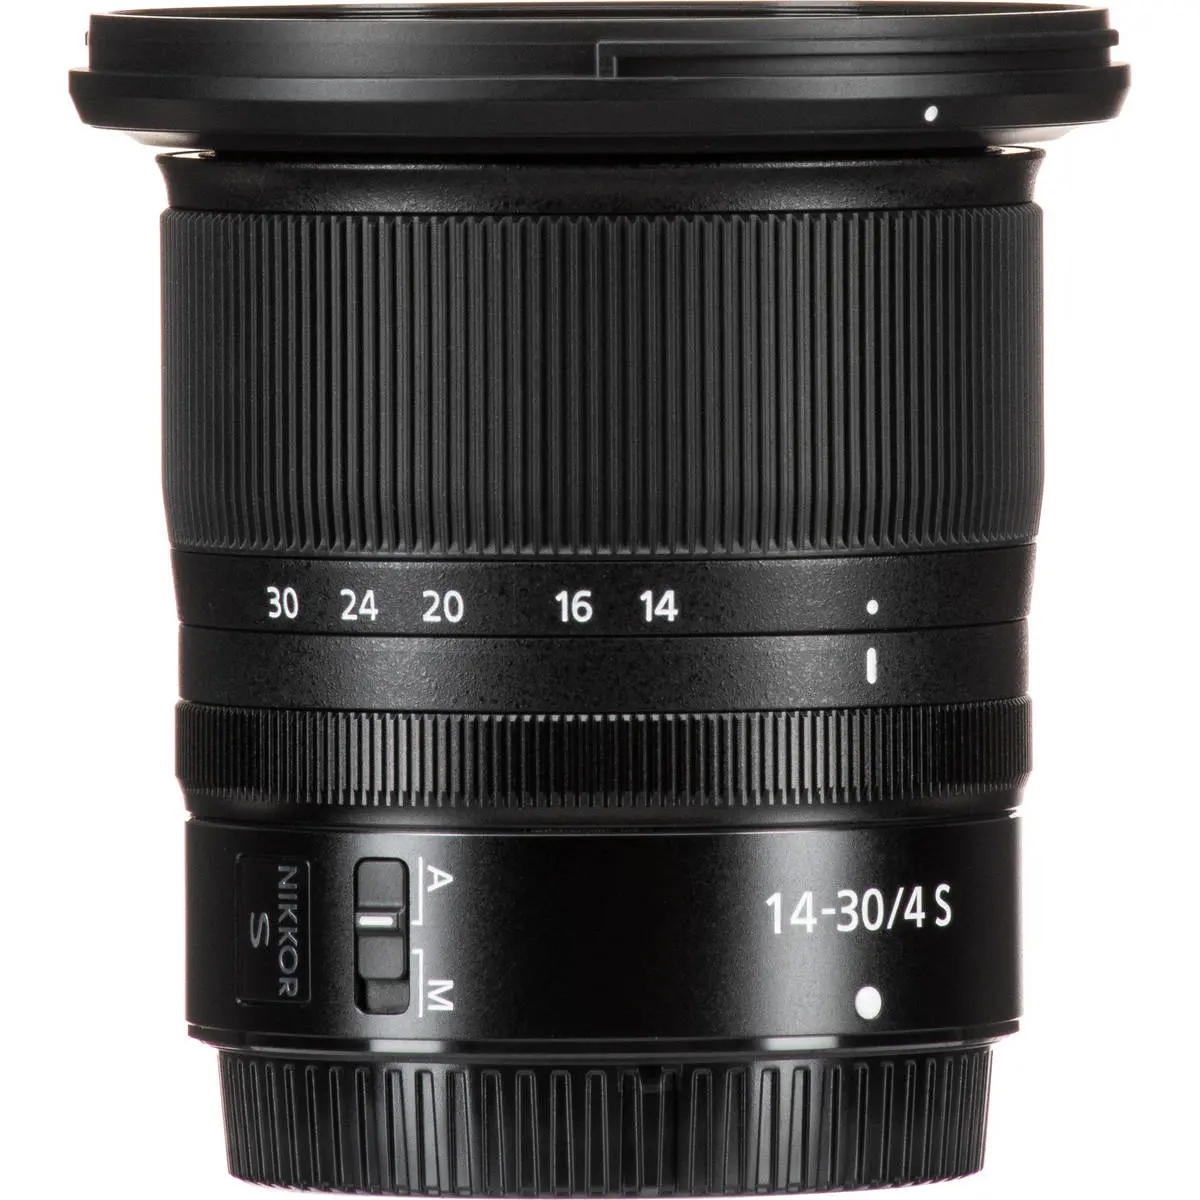 3. Nikon NIKKOR Z 14-30mm F4 S Mirrorless Lens for Z6 Z7 Z Mount